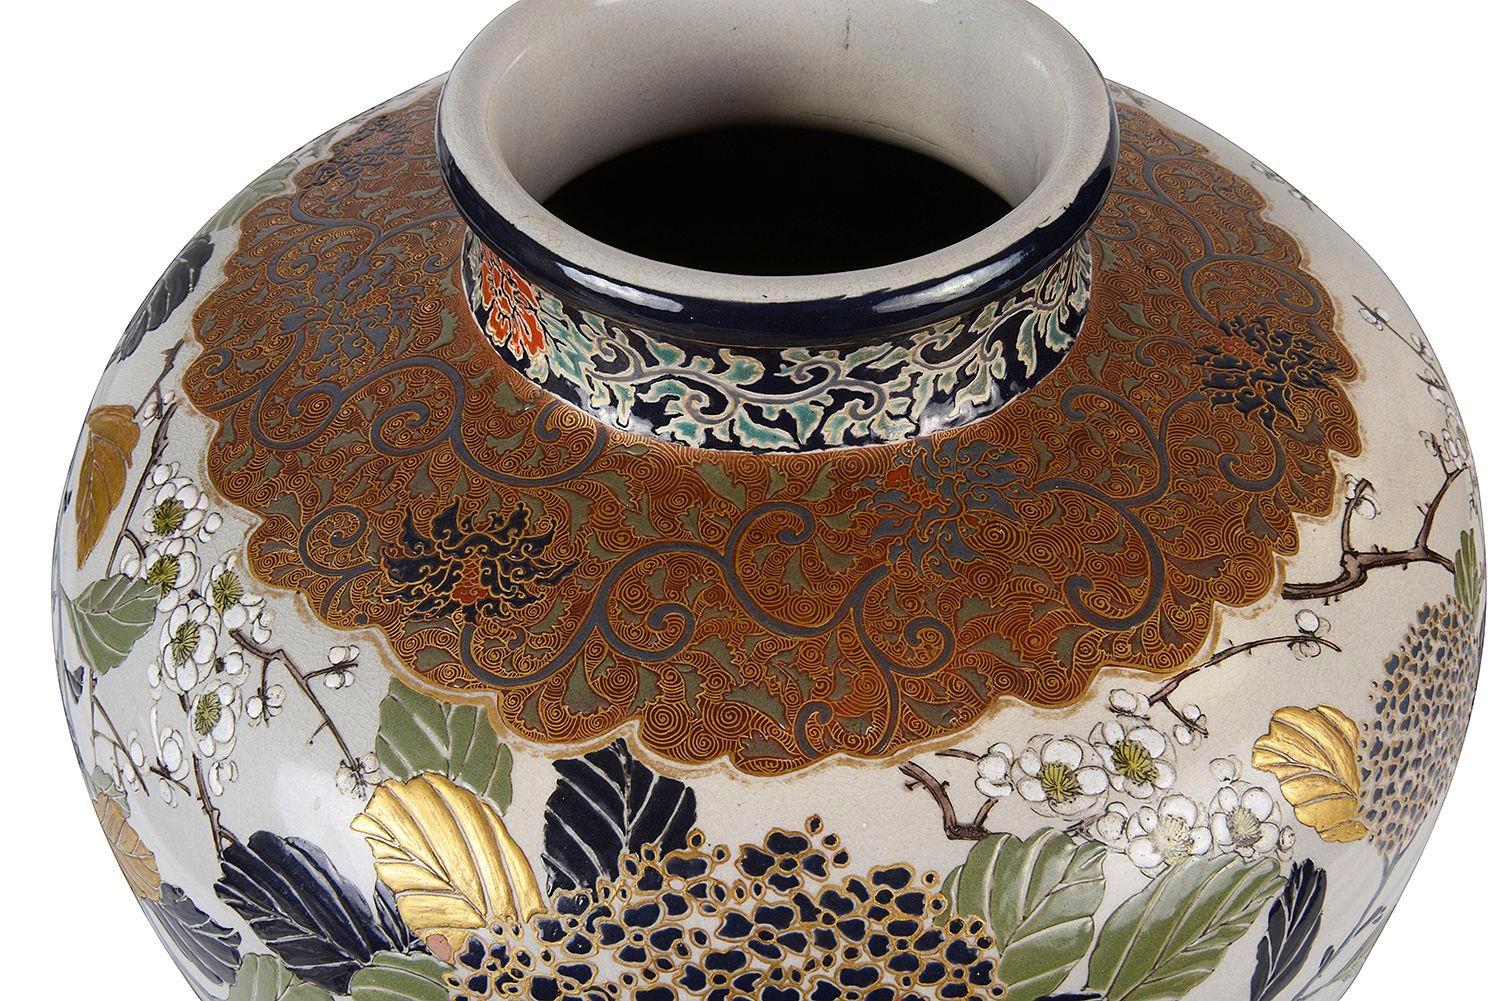 Un vase impérial japonais de Satsuma de la fin du 19e siècle, imposant et de belle qualité. Le fond est bleu cobalt, le collier est orné d'un décor feuillagé doré, la bande centrale peinte à la main représente de magnifiques arbres en fleurs et des